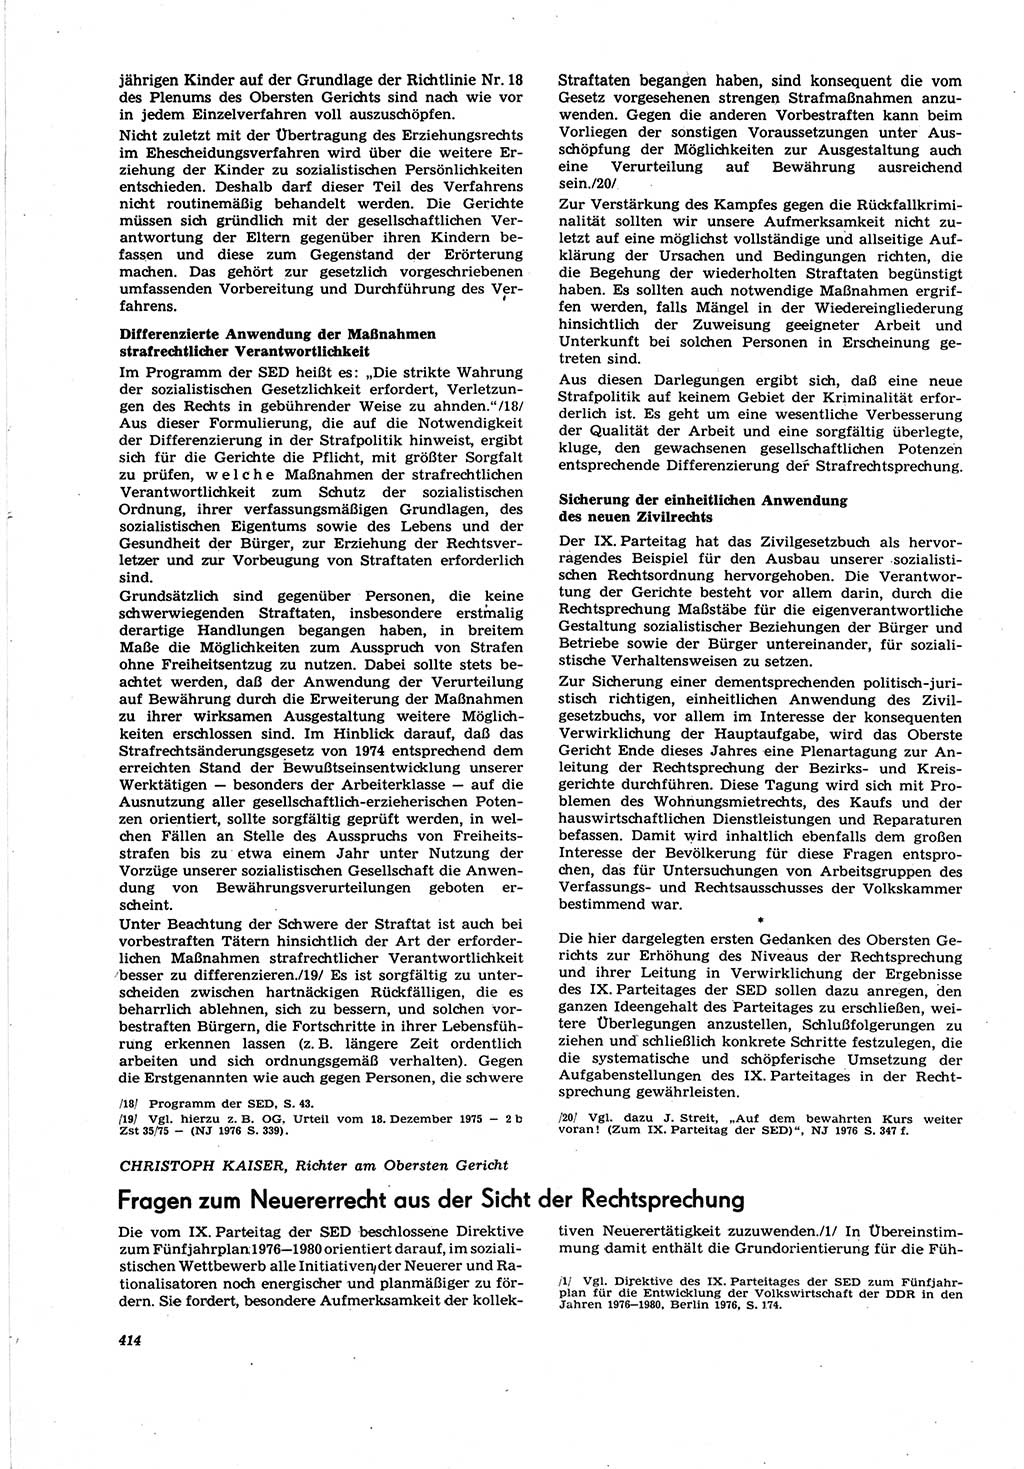 Neue Justiz (NJ), Zeitschrift für Recht und Rechtswissenschaft [Deutsche Demokratische Republik (DDR)], 30. Jahrgang 1976, Seite 414 (NJ DDR 1976, S. 414)